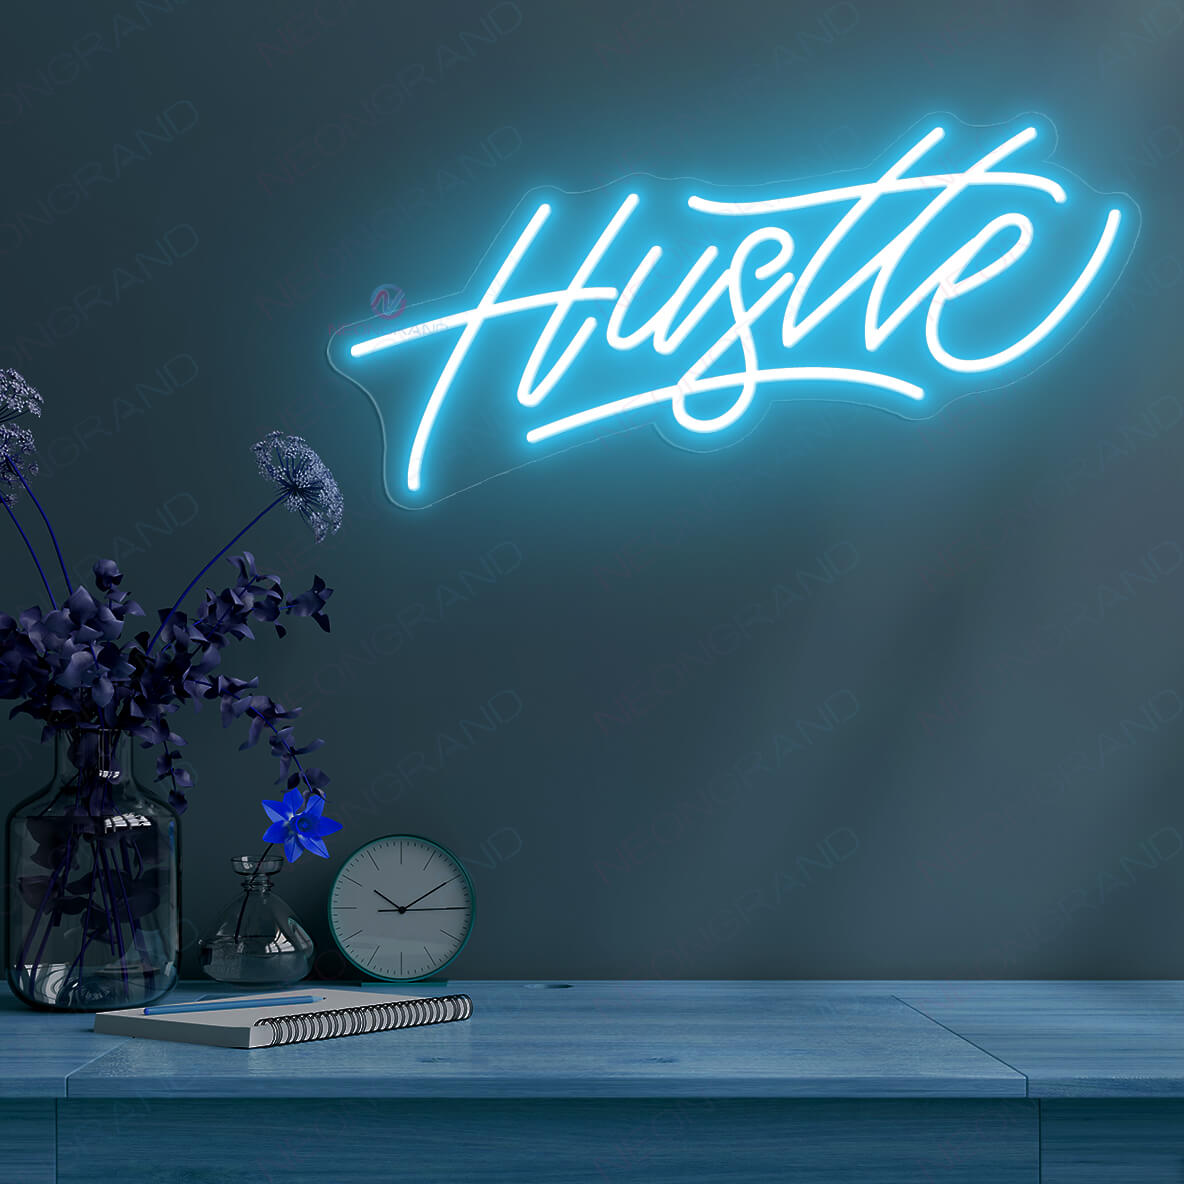 Hustle Neon Sign Wall Led Light light blue